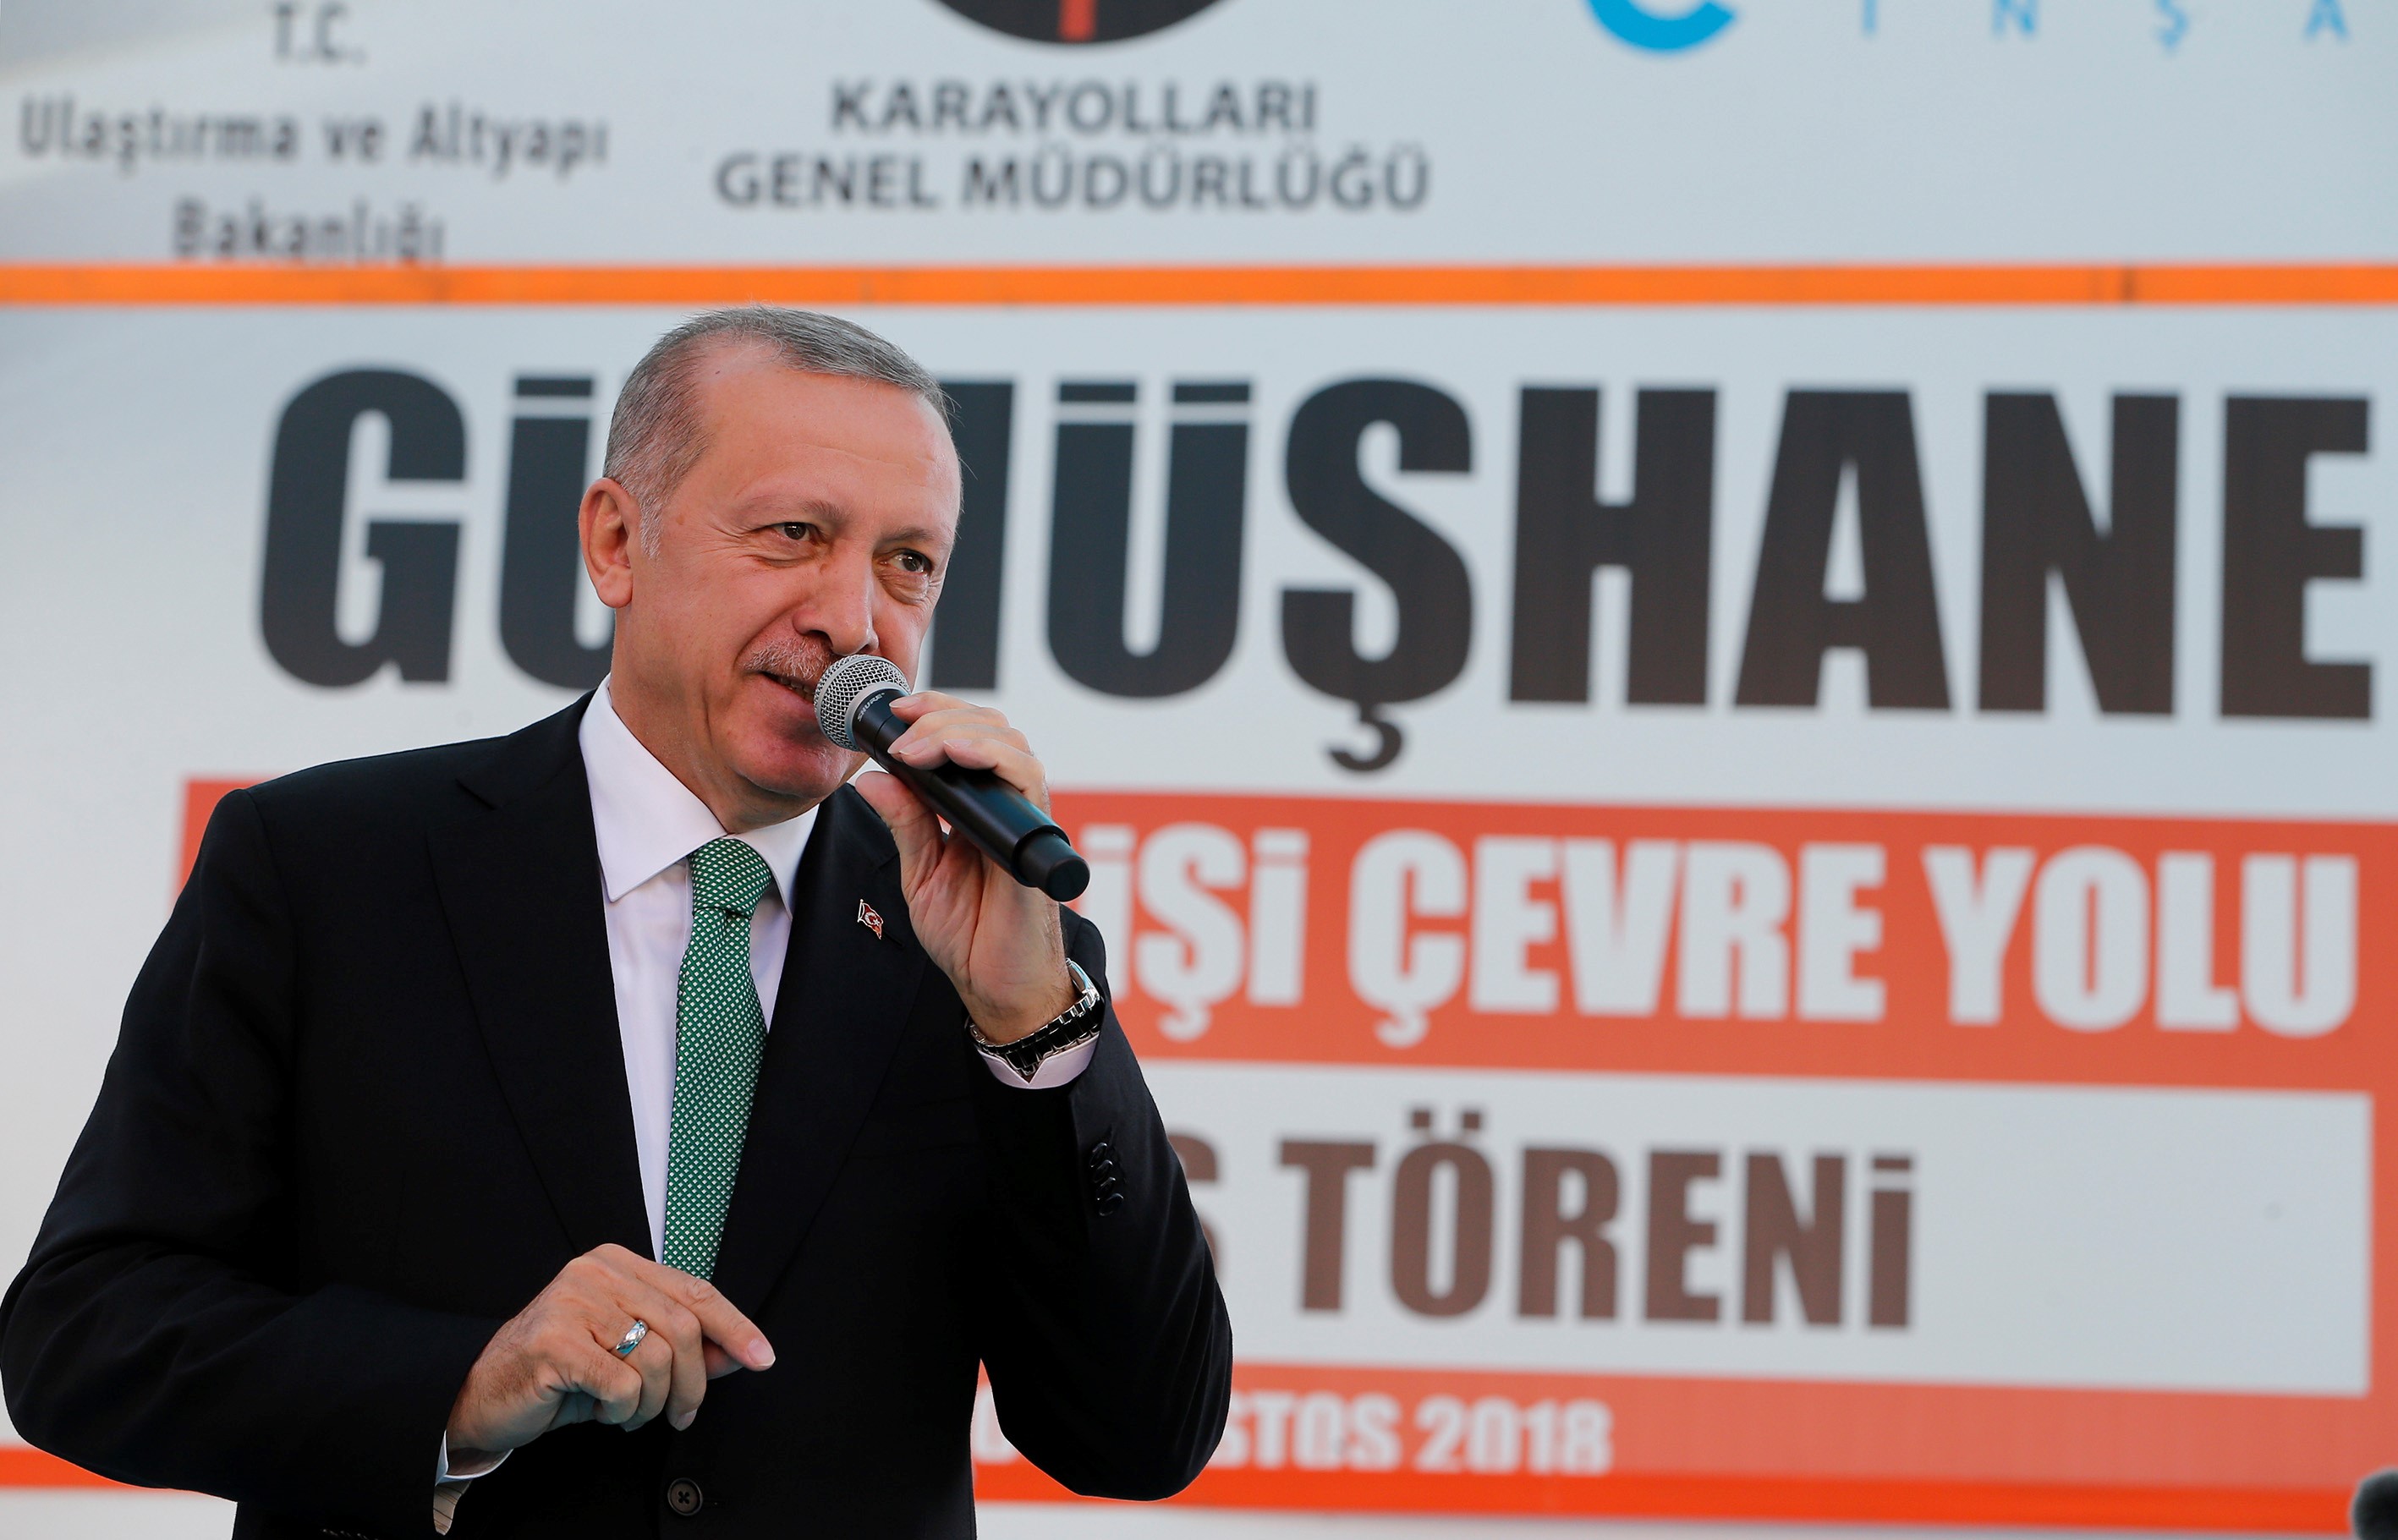 Erdogan arra kéri a törököket, hogy vegyenek lírát, mert nagy a baj